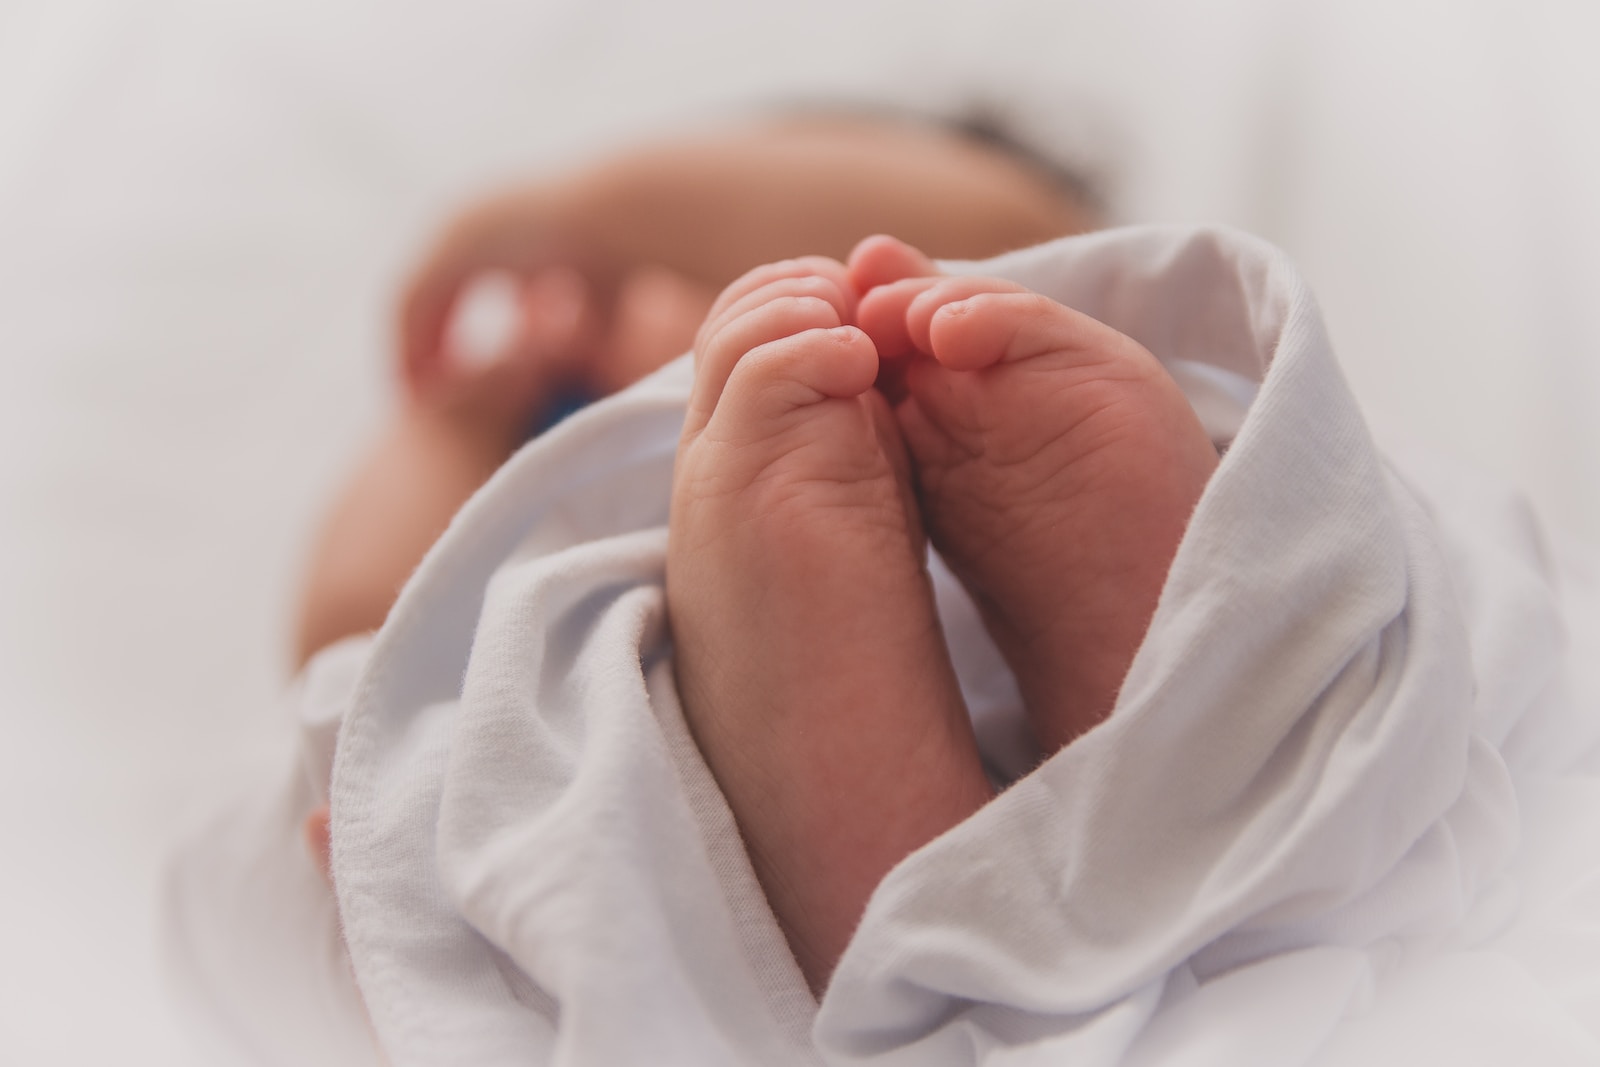 האם אפשר לתבוע עקב רשלנות רפואית בלידה?